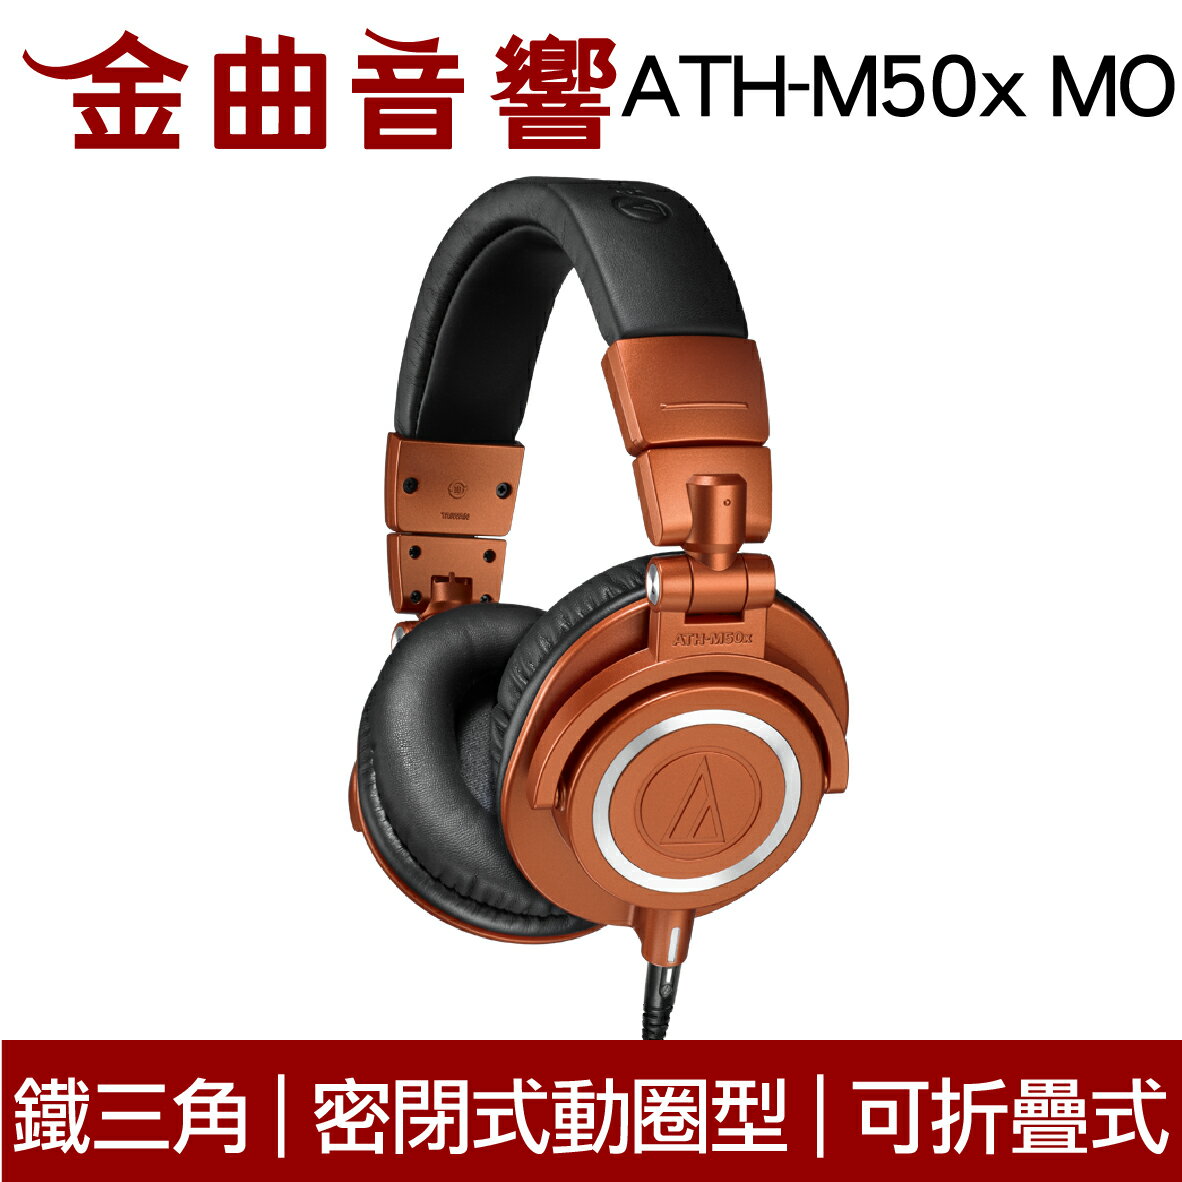 鐵三角 ATH-M50x MO 限定款 專業型 監聽耳機 | 金曲音響